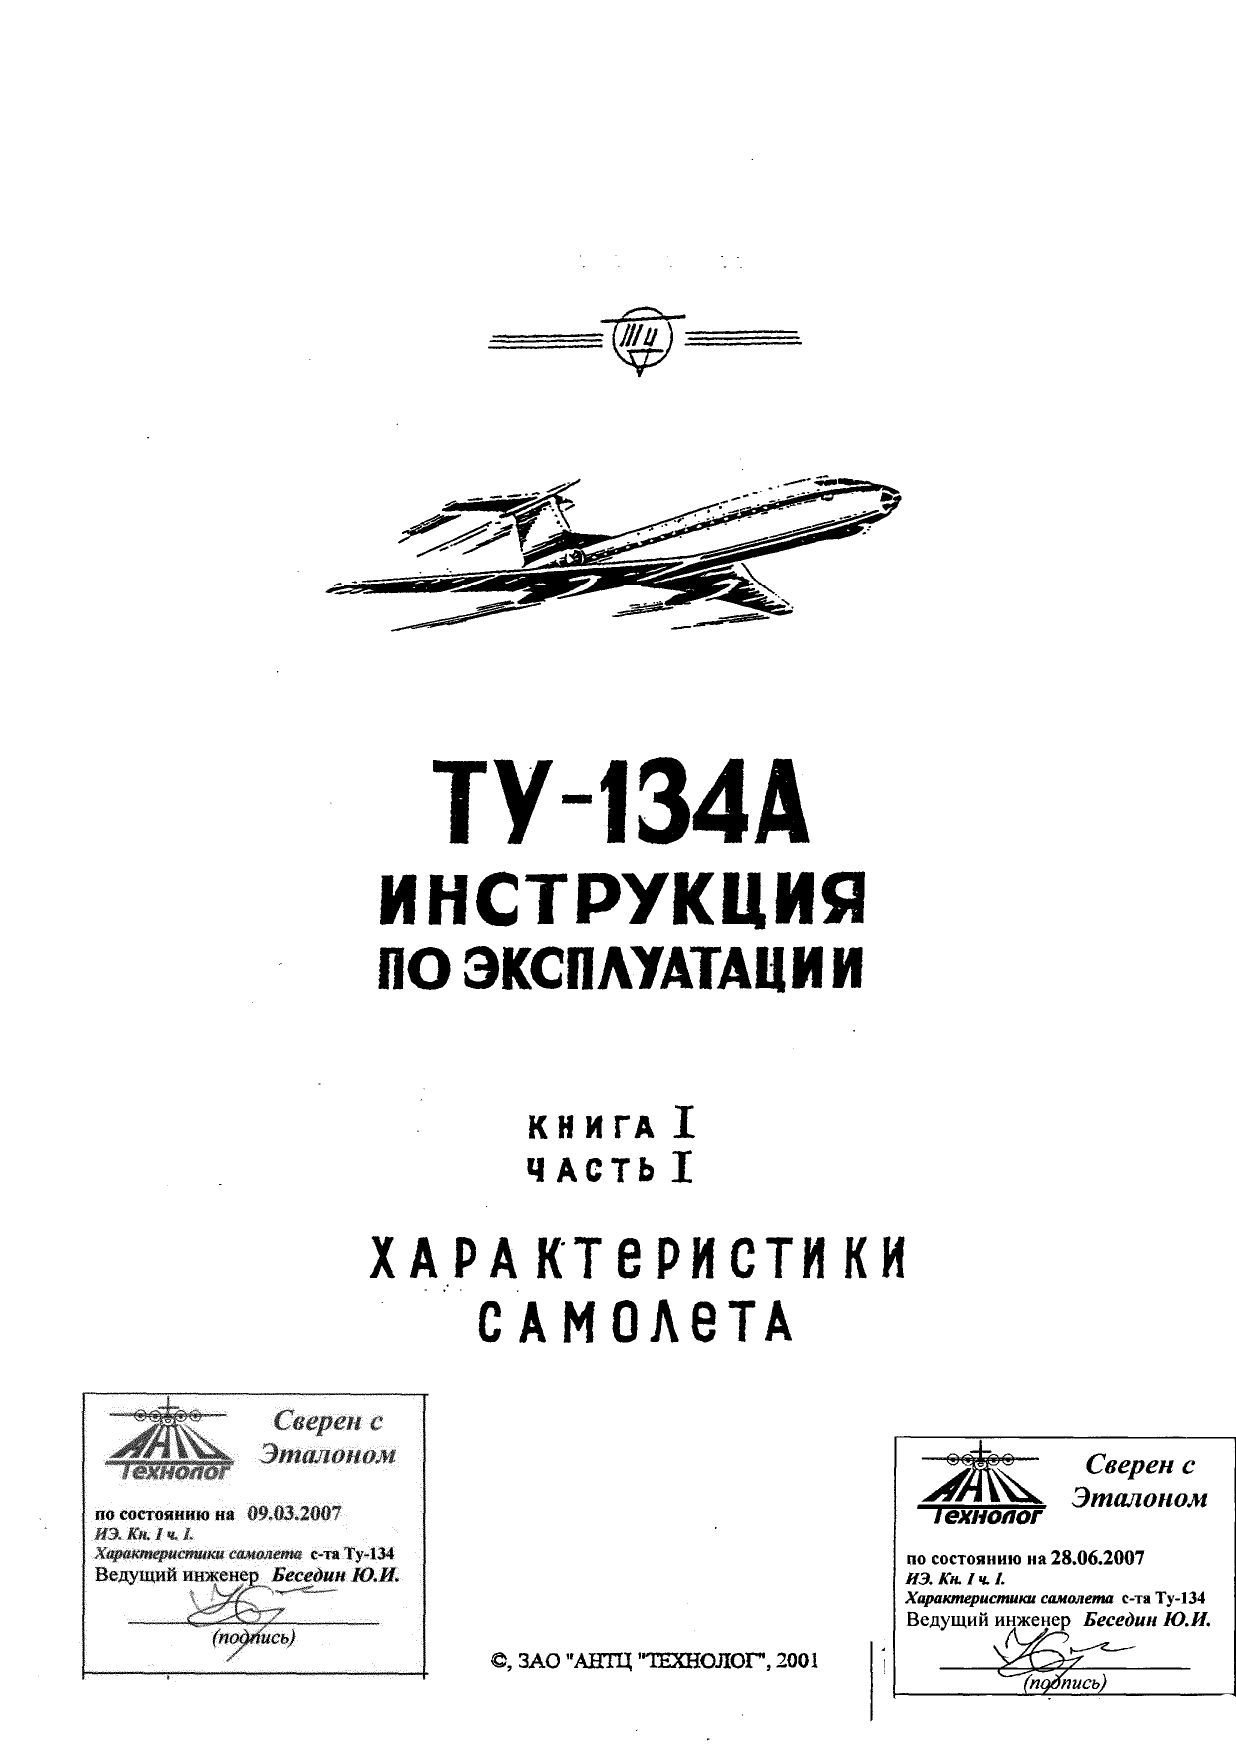 Tu-134_IYE_kn1_ch1_002